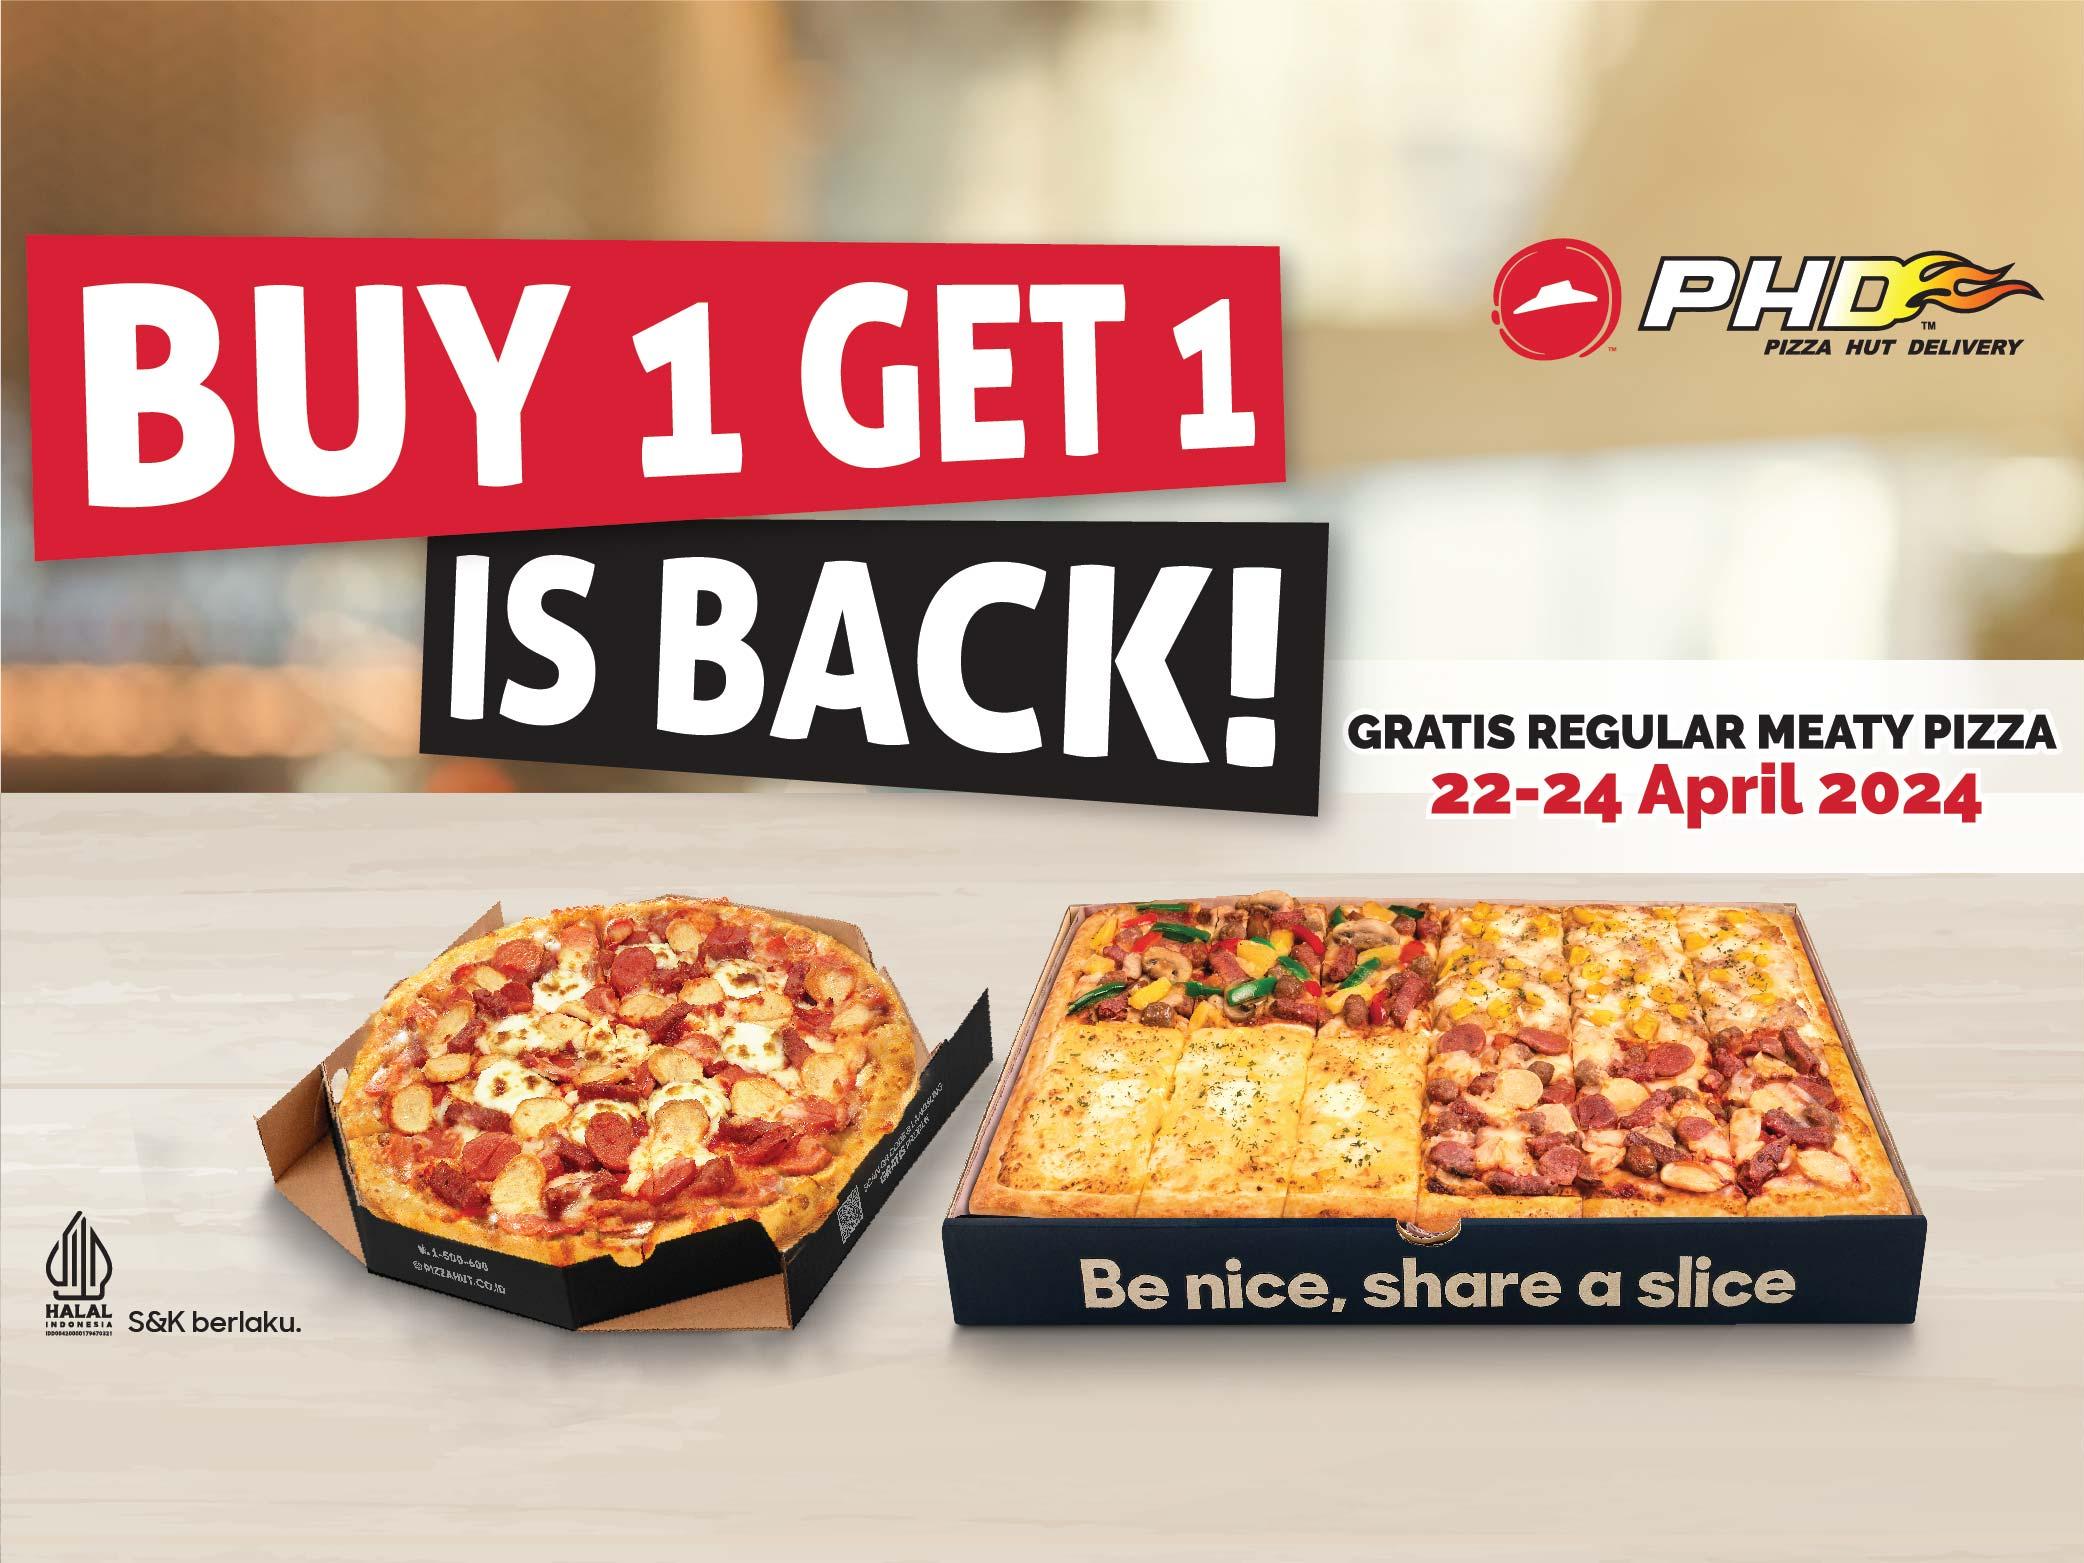 Pizza Hut Delivery - PHD, Gajah Mada Tiban